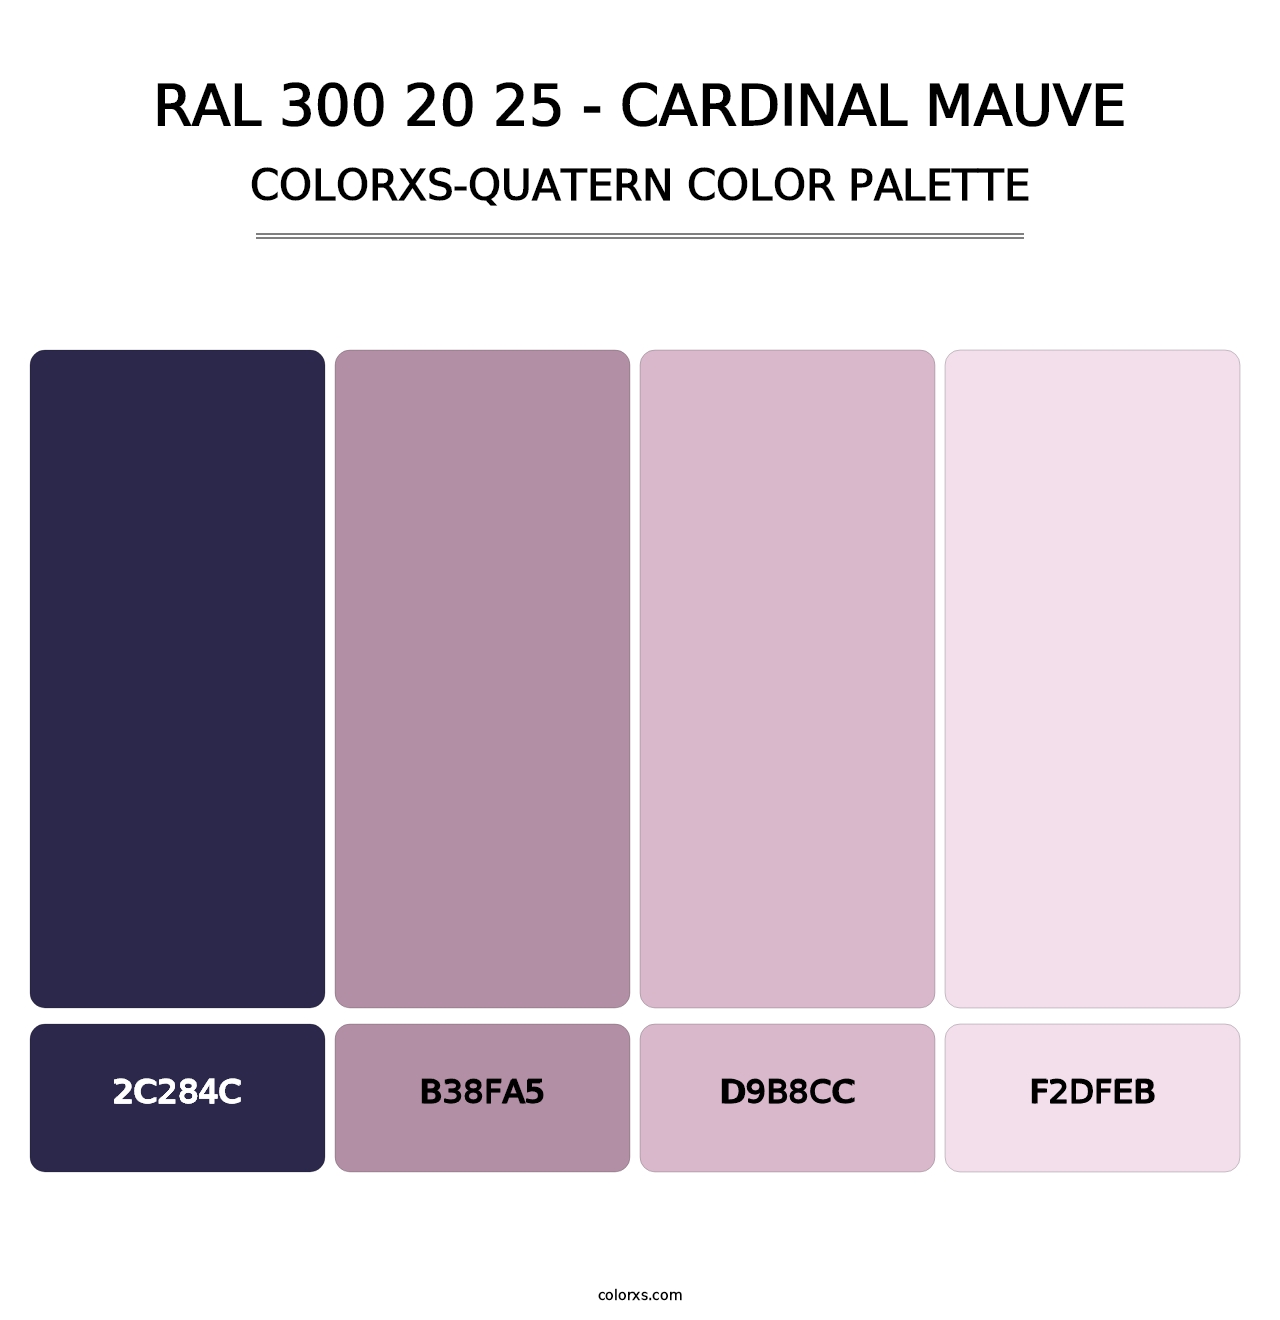 RAL 300 20 25 - Cardinal Mauve - Colorxs Quatern Palette